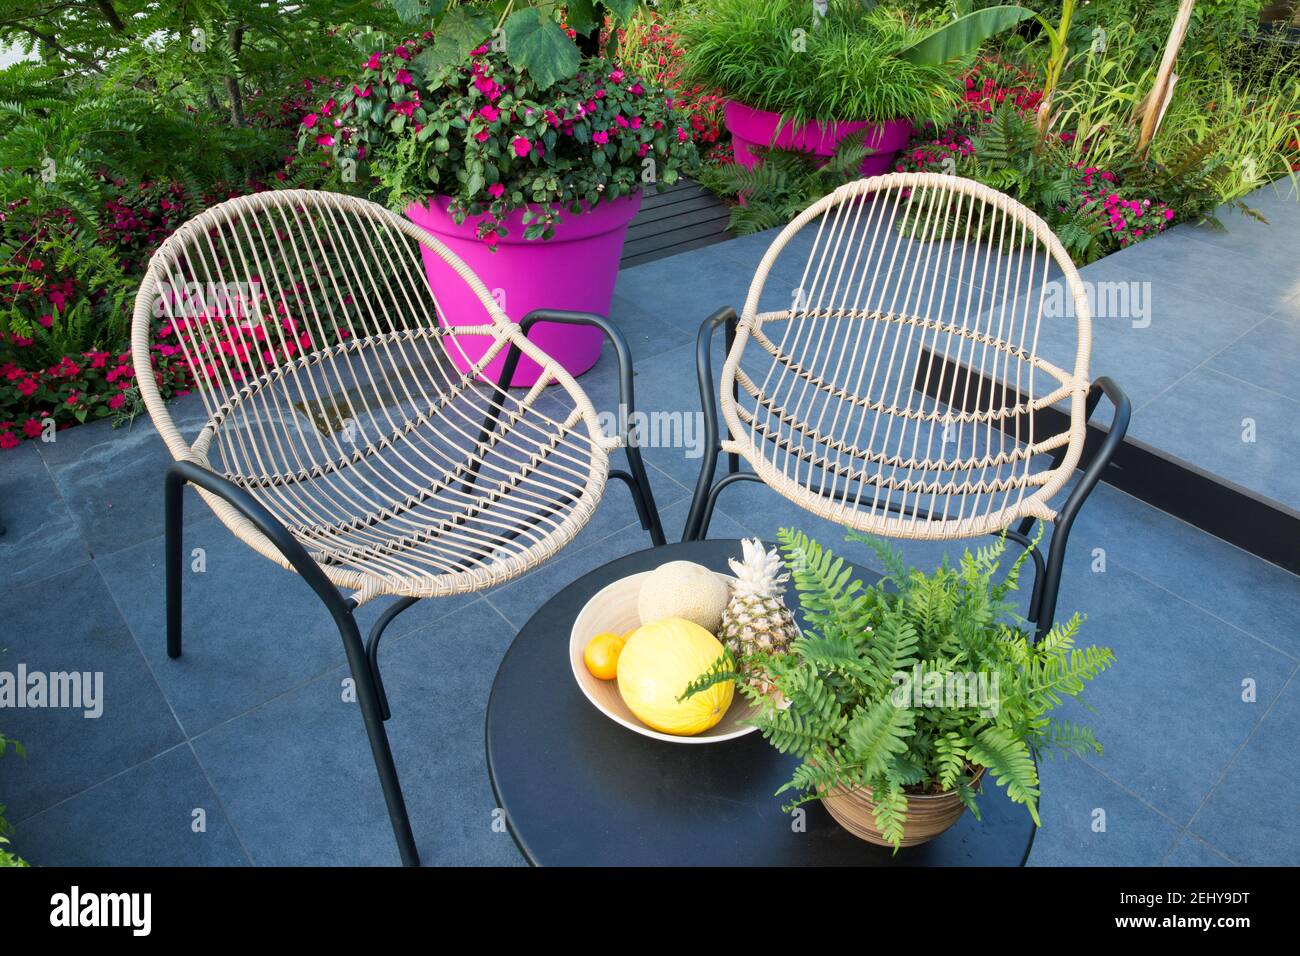 Metall gerahmte Rattan Gartenmöbel Stühle und Tisch mit Pflanzen Topf mit Farn auf einem dunklen Graphit Porzellan gepflastert Terrasse England GB Stockfoto